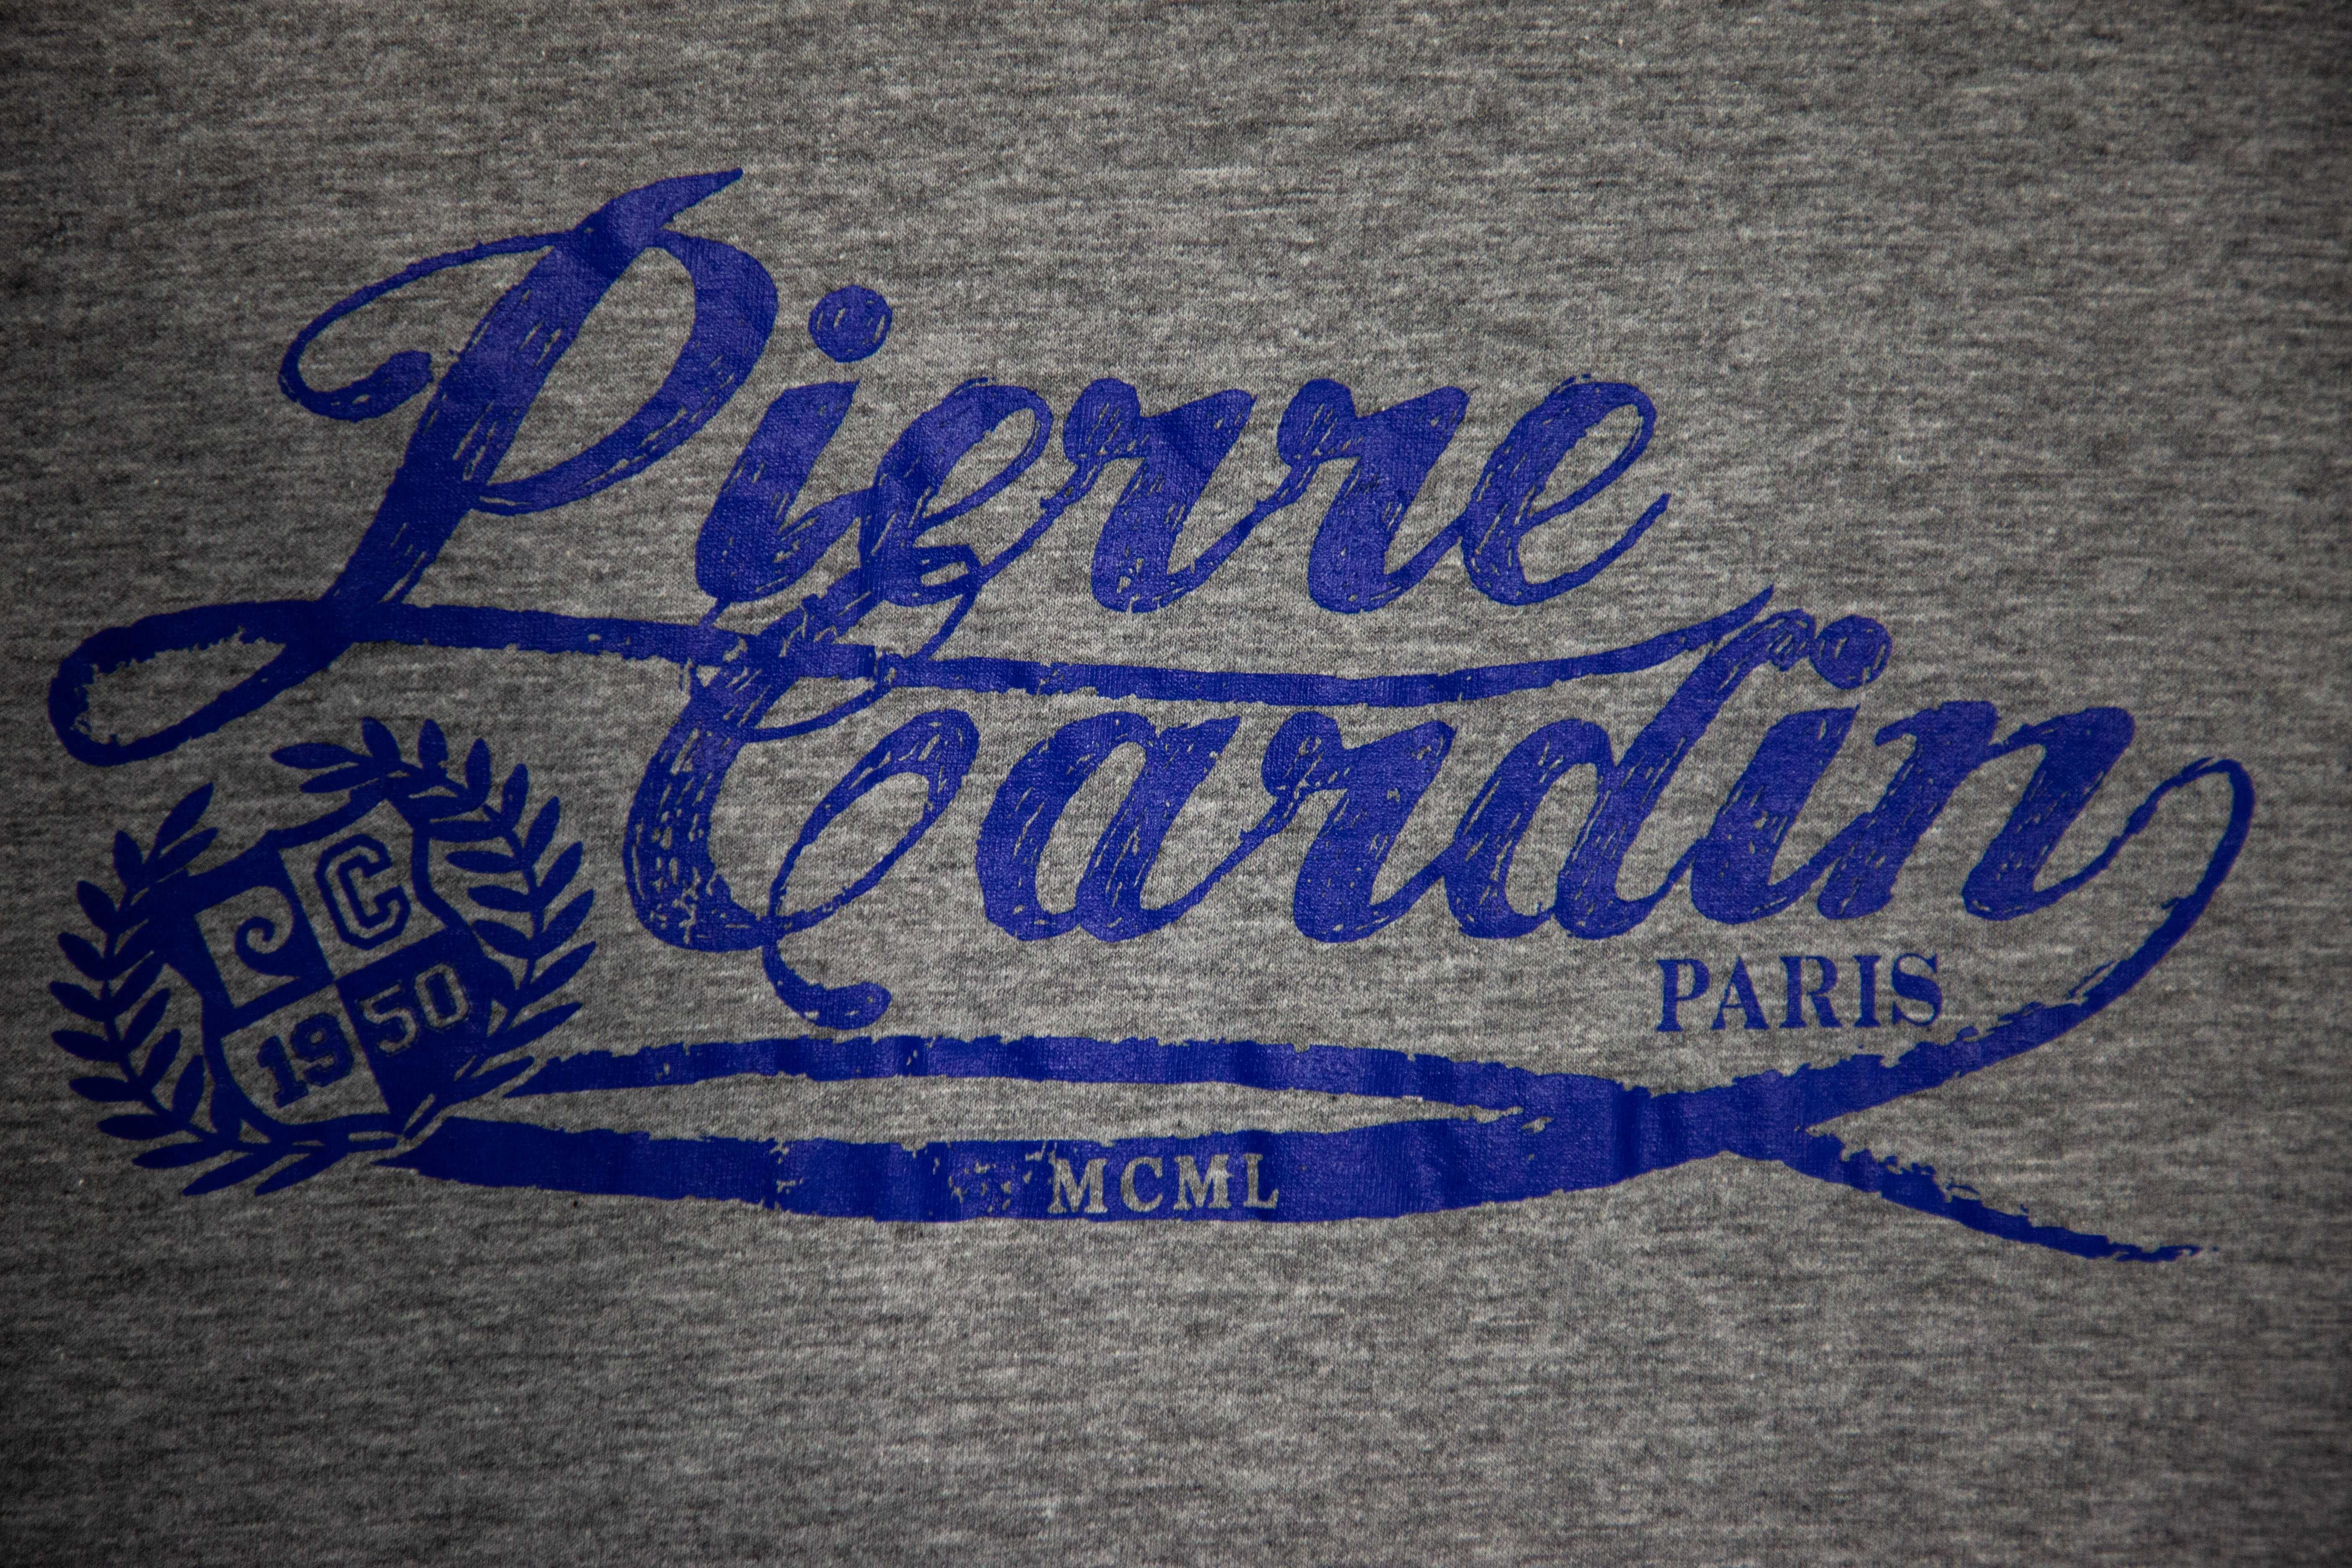 Pierre Cardin - тениска L